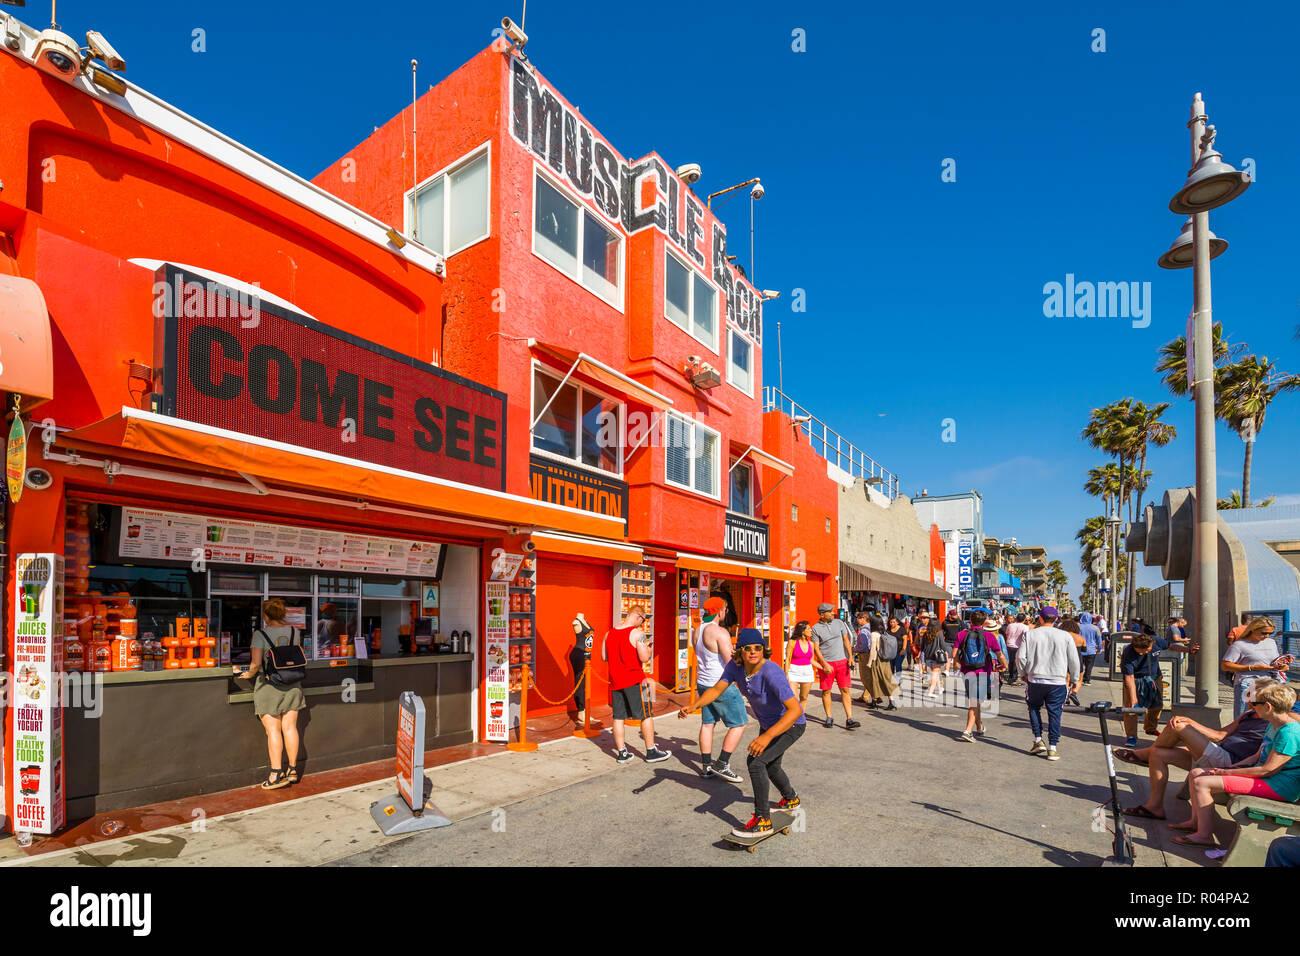 Avis de boutiques colorées sur Ocean Front Walk in Venice Beach, Los Angeles, Californie, États-Unis d'Amérique, Amérique du Nord Banque D'Images